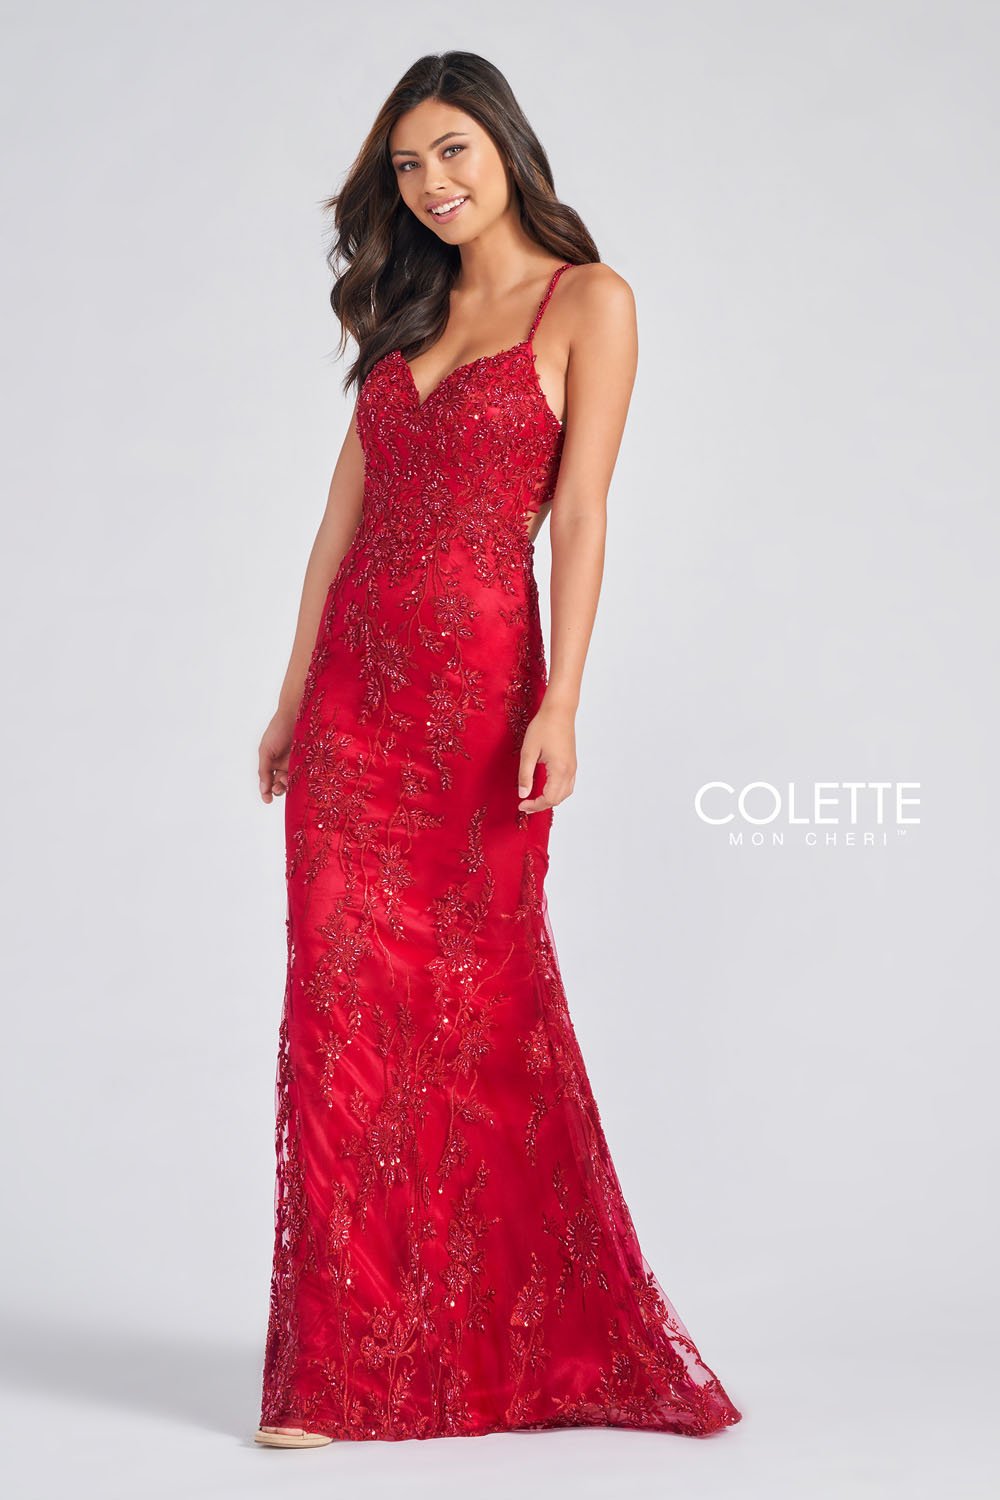 Colette CL12240 Scarlet prom dresses.  Scarlet prom dresses image by Colette.